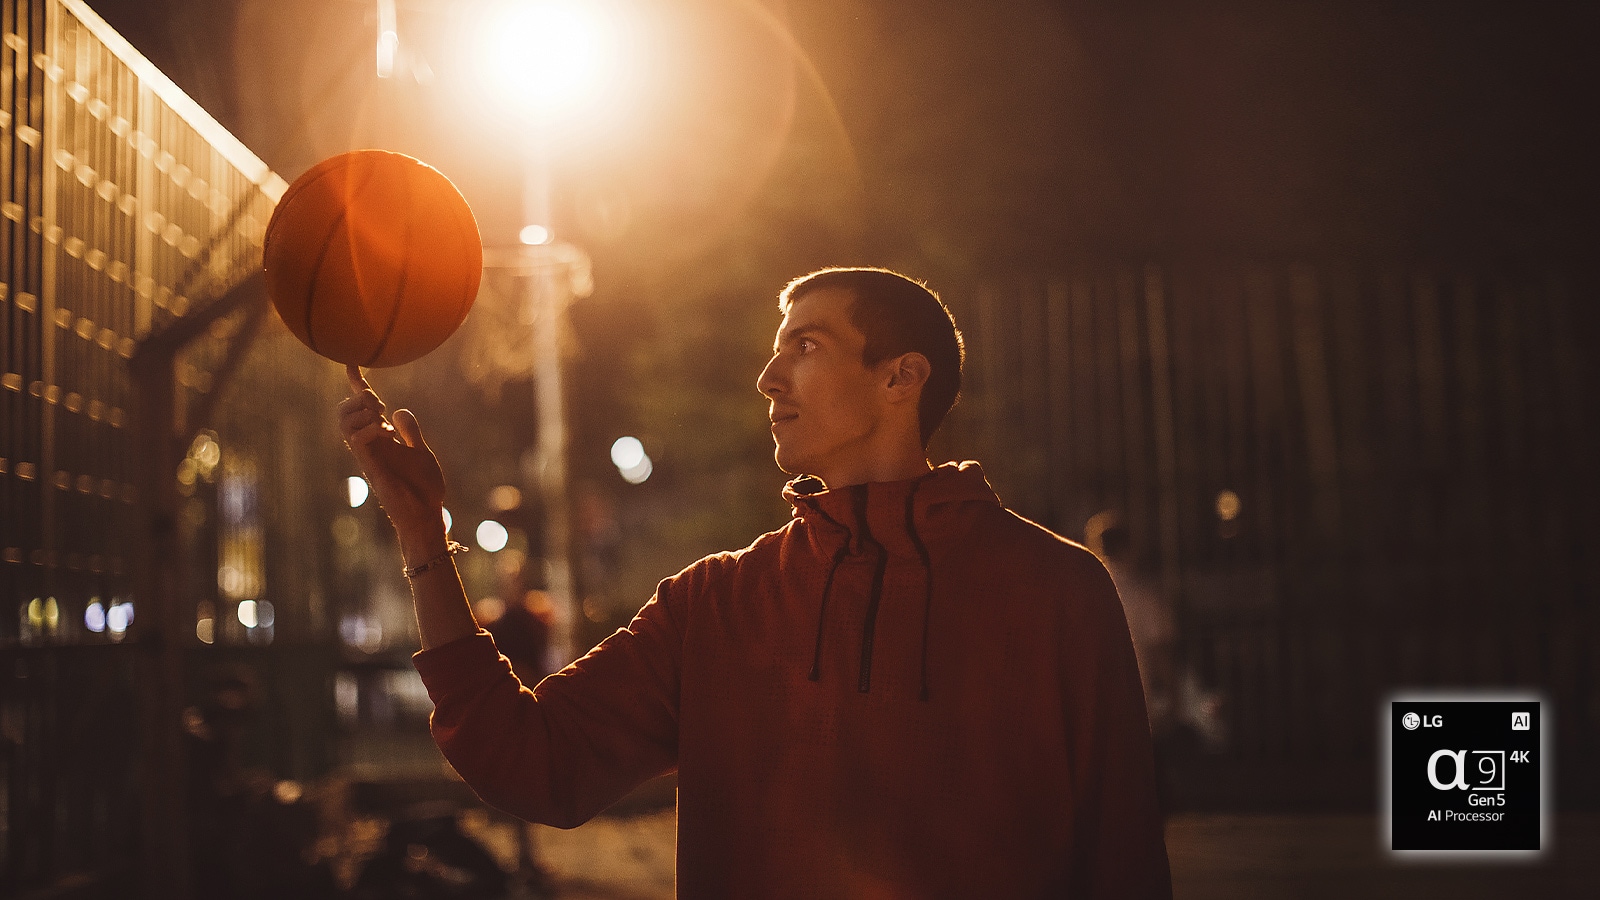 אדם במגרש כדורסל בלילה הופך כדורסל על אצבעו